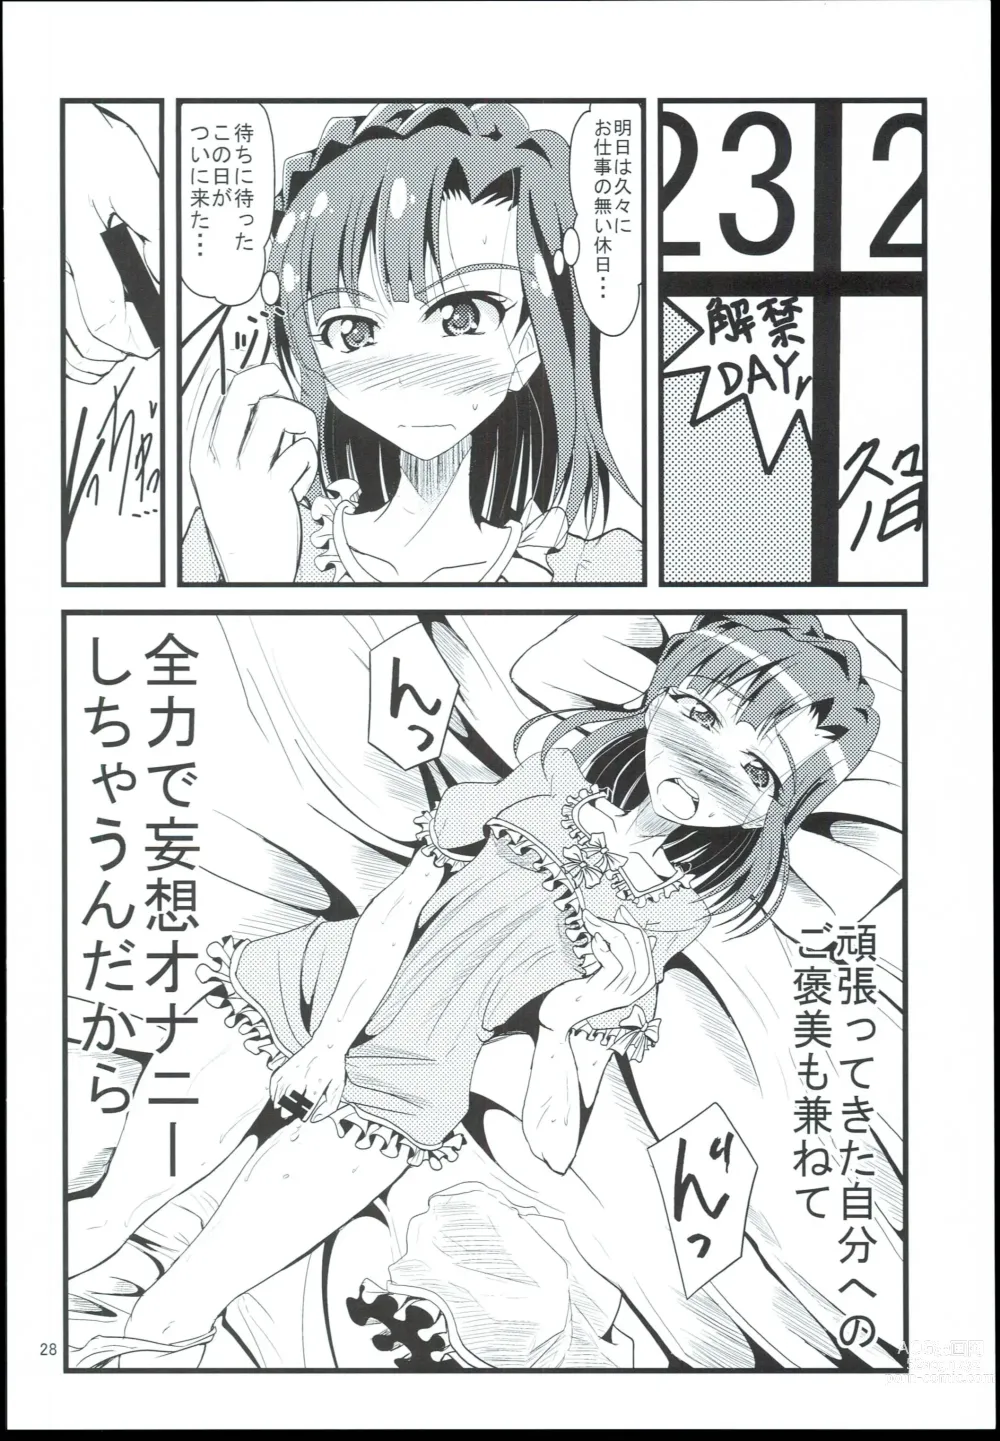 Page 28 of doujinshi Otanoshimi no Kioku Sousyuuhen